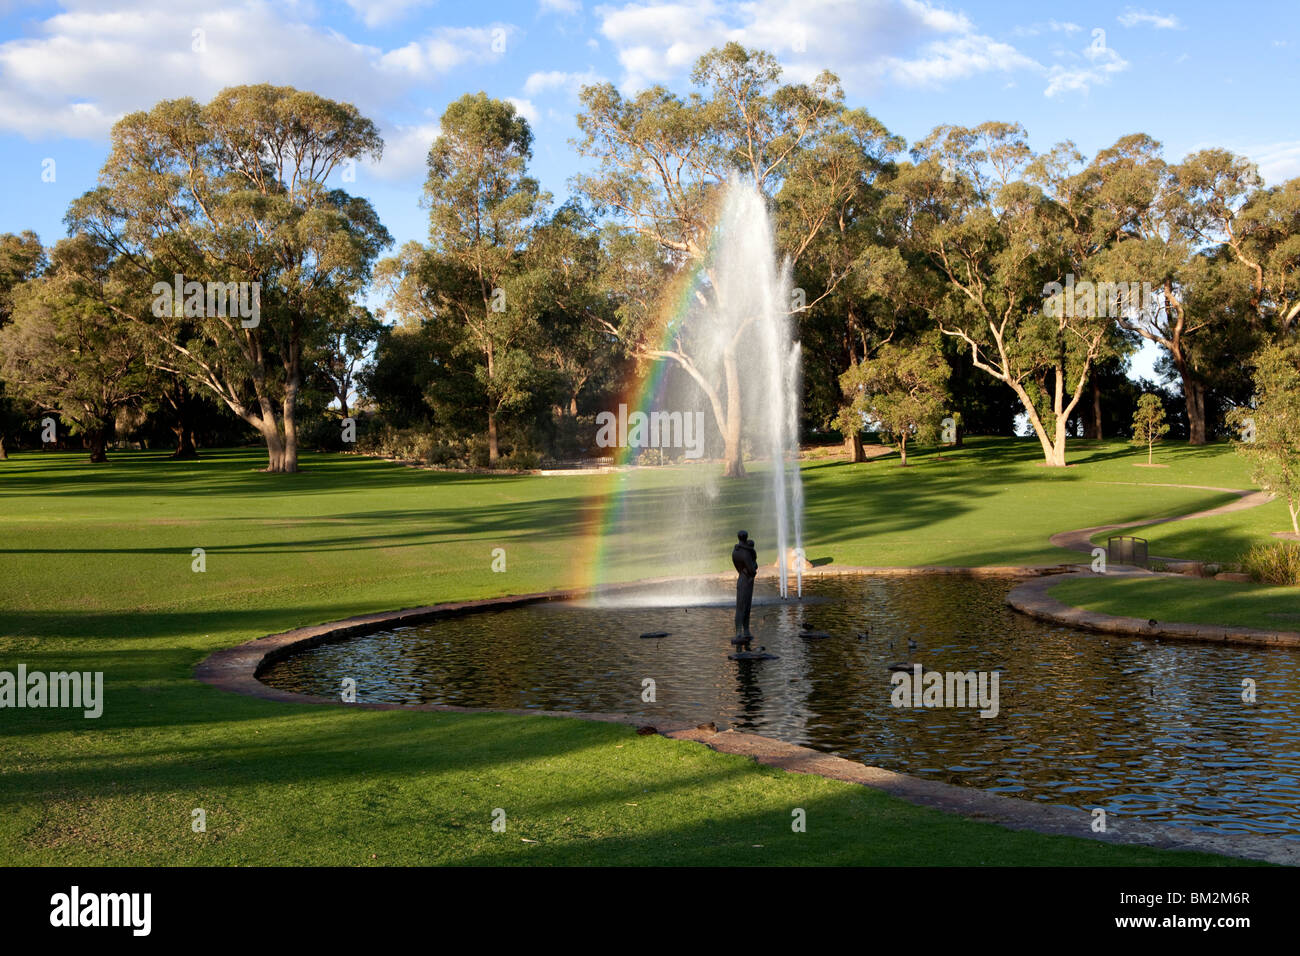 Brunnen und gepflegten Rasenflächen im Kings Park, Perth, Western Australia. Ein Regenbogen erscheint in den Brunnen Spray. Stockfoto